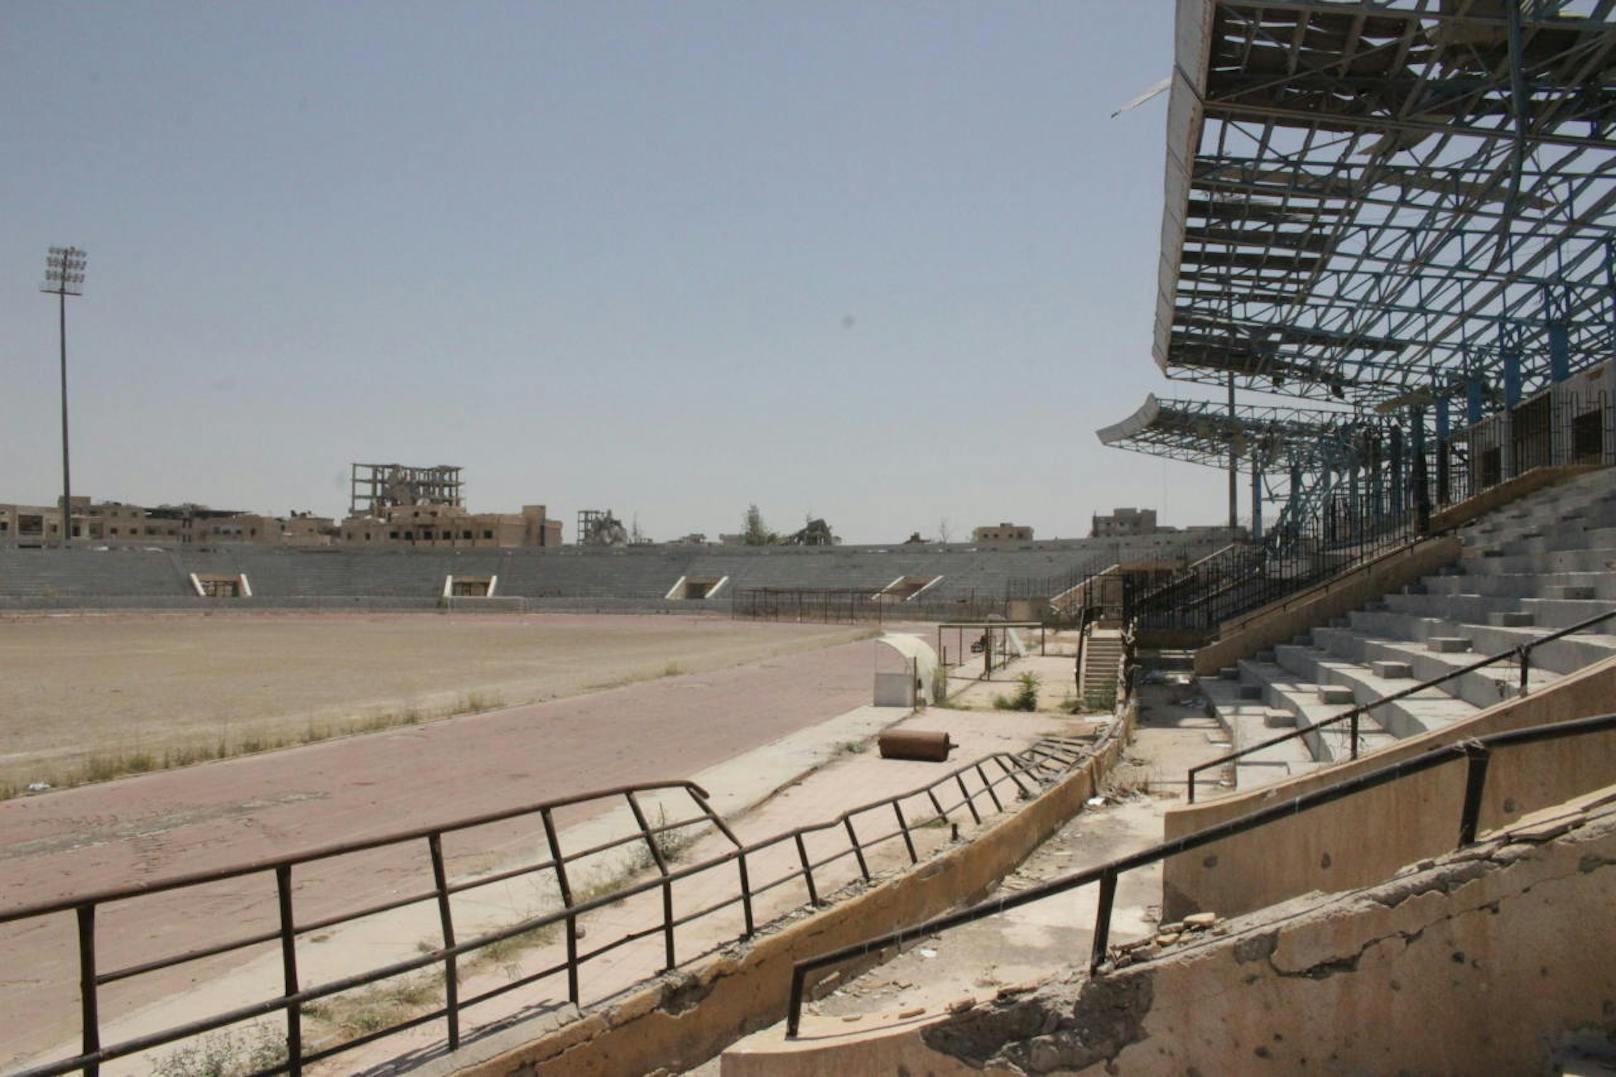 Der unheimliche Gang durch das Sportstadion von Raqqa.